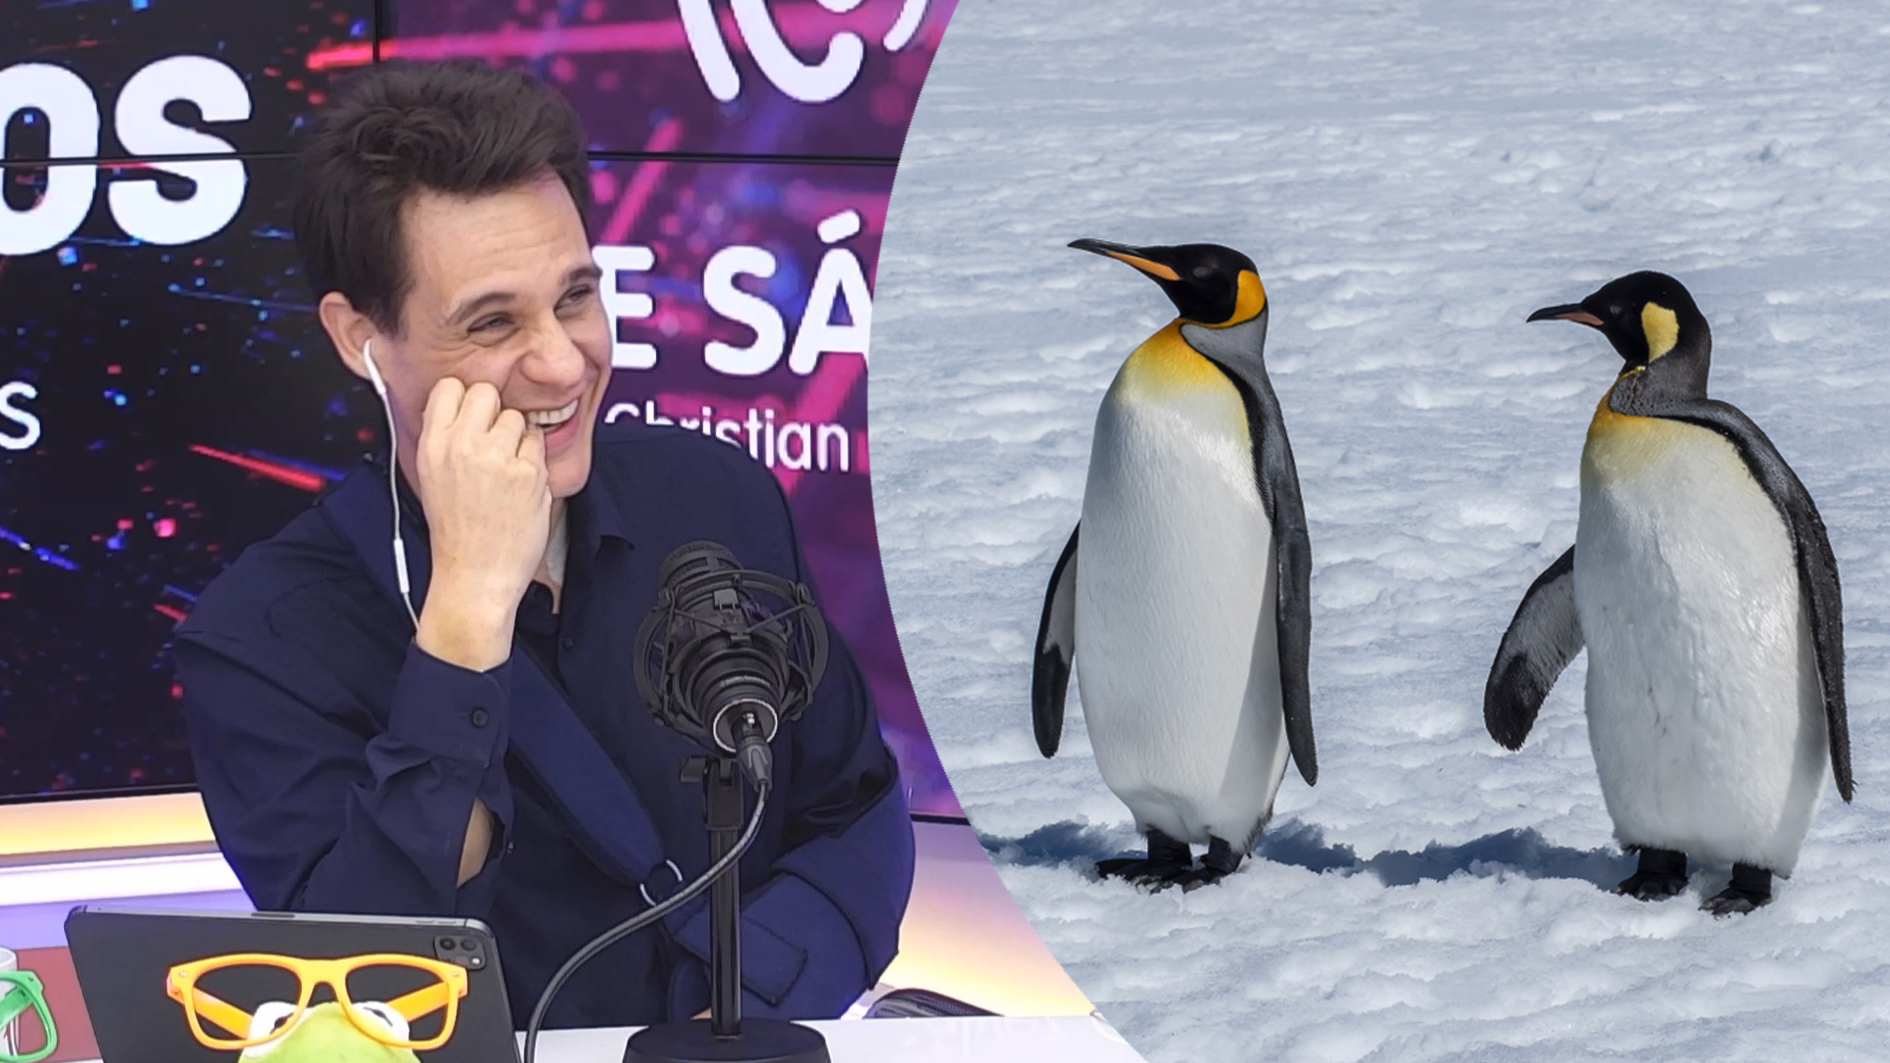 Descubre el talento oculto de los pingüinos: "Pueden lanzarla a metro y medio"